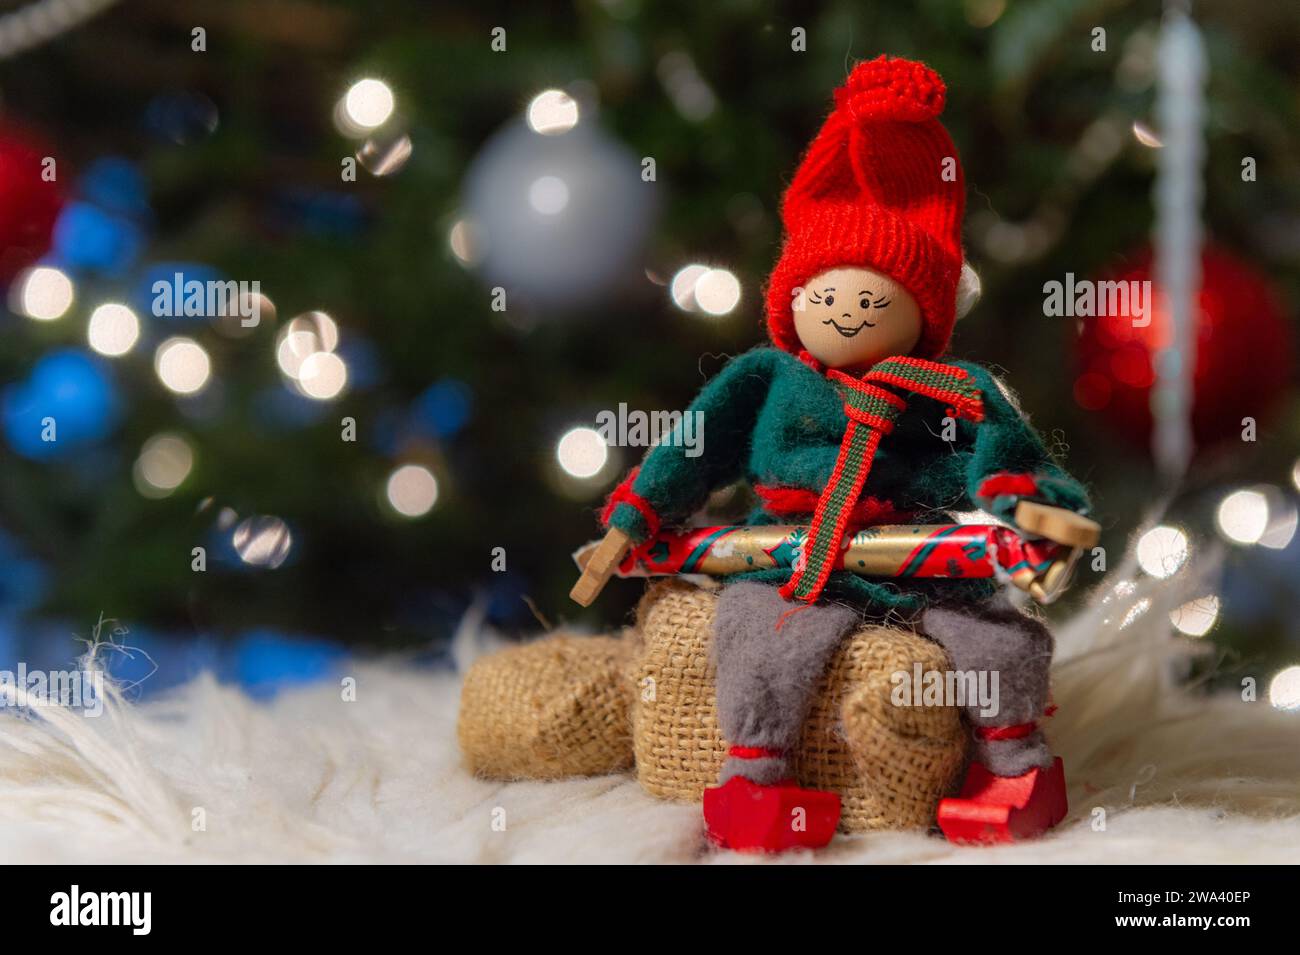 Decorazioni natalizie invernali stagionali non cristiane Foto Stock